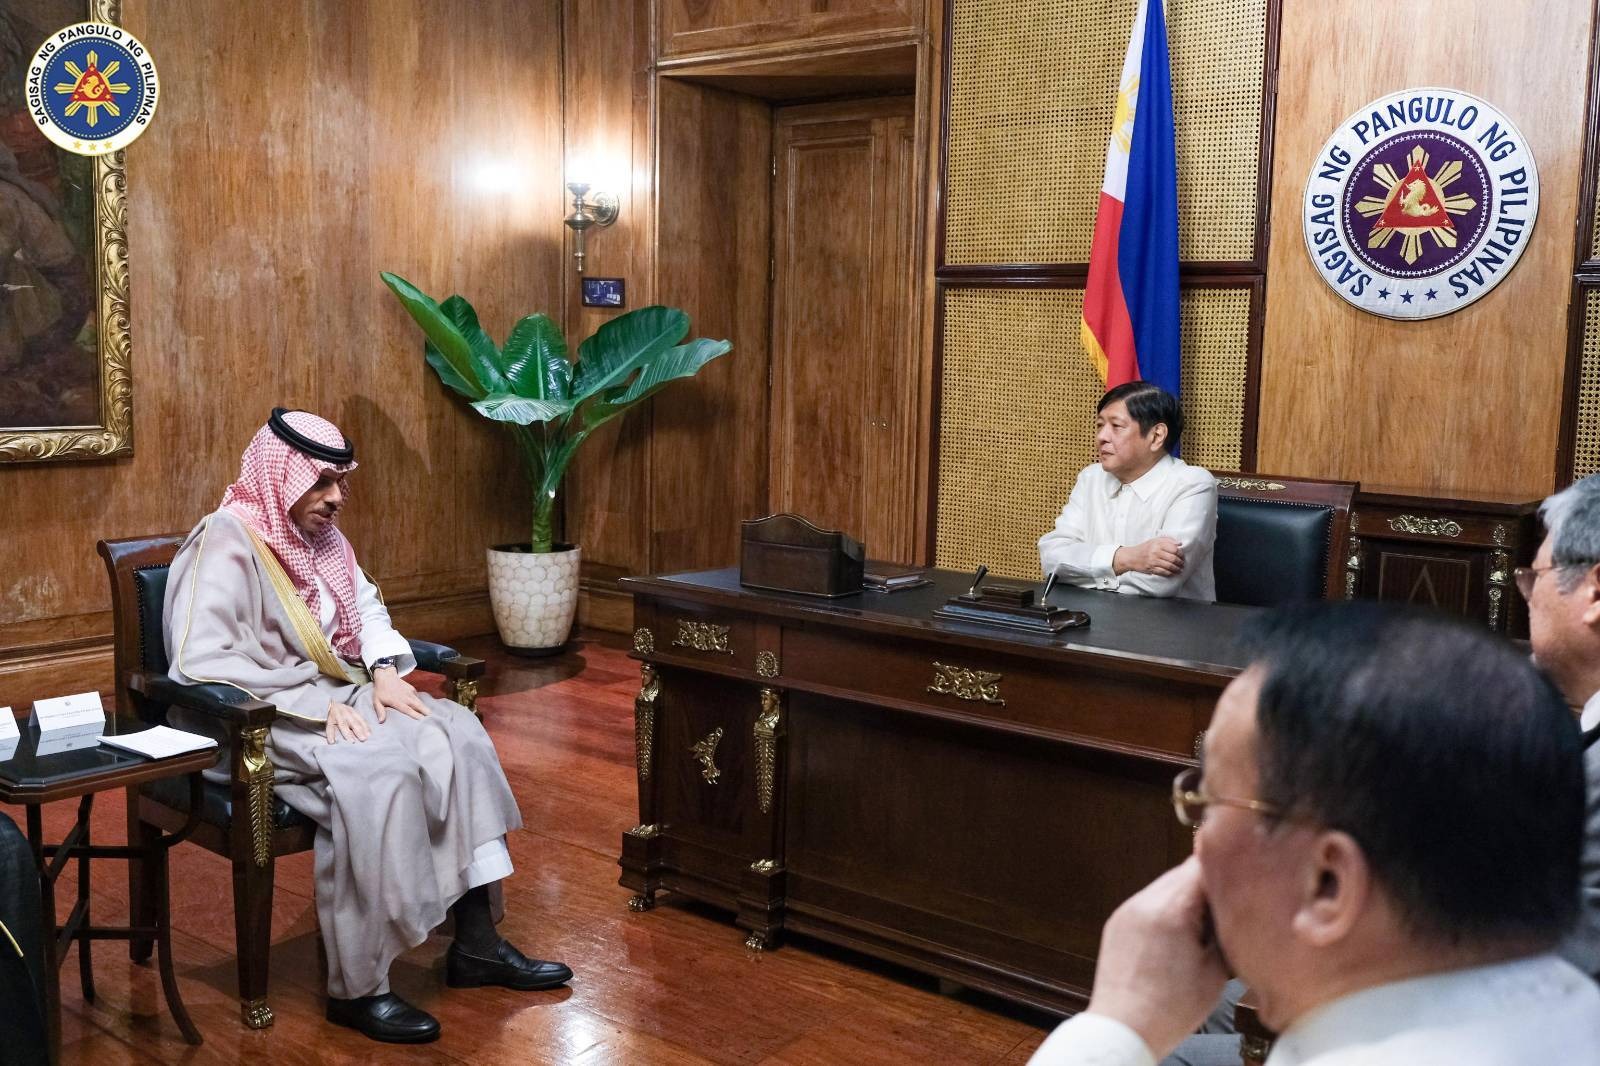 PBBM, Prince Faisal bin Farhan Al Saud sitting talking